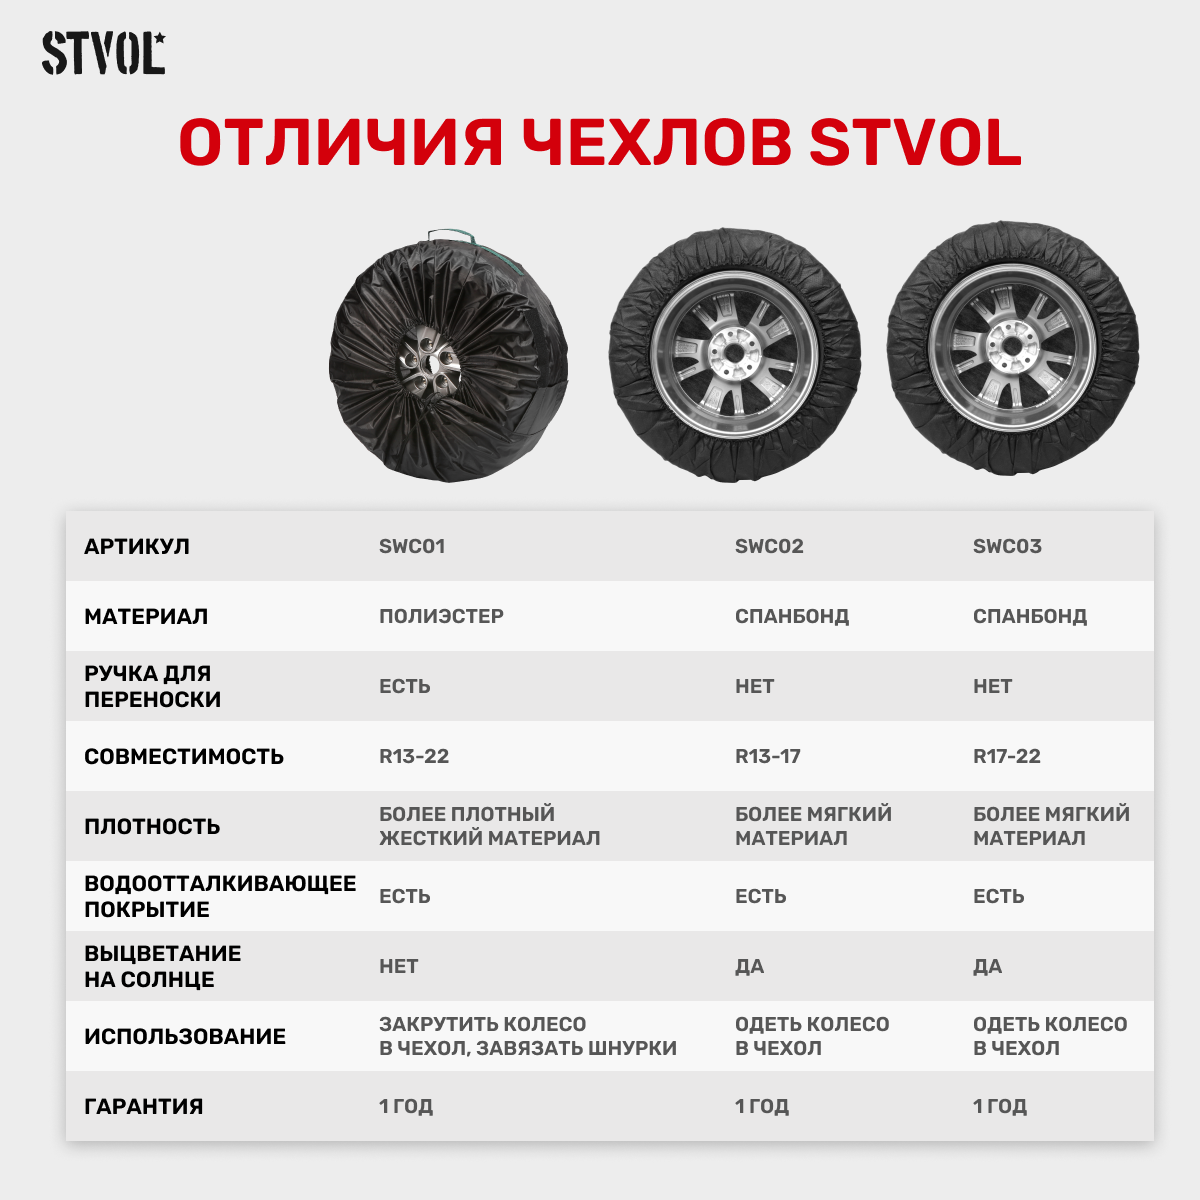 Чехлы для хранения автомобильных колес STVOL SWC03 R17-22 комплект 4 